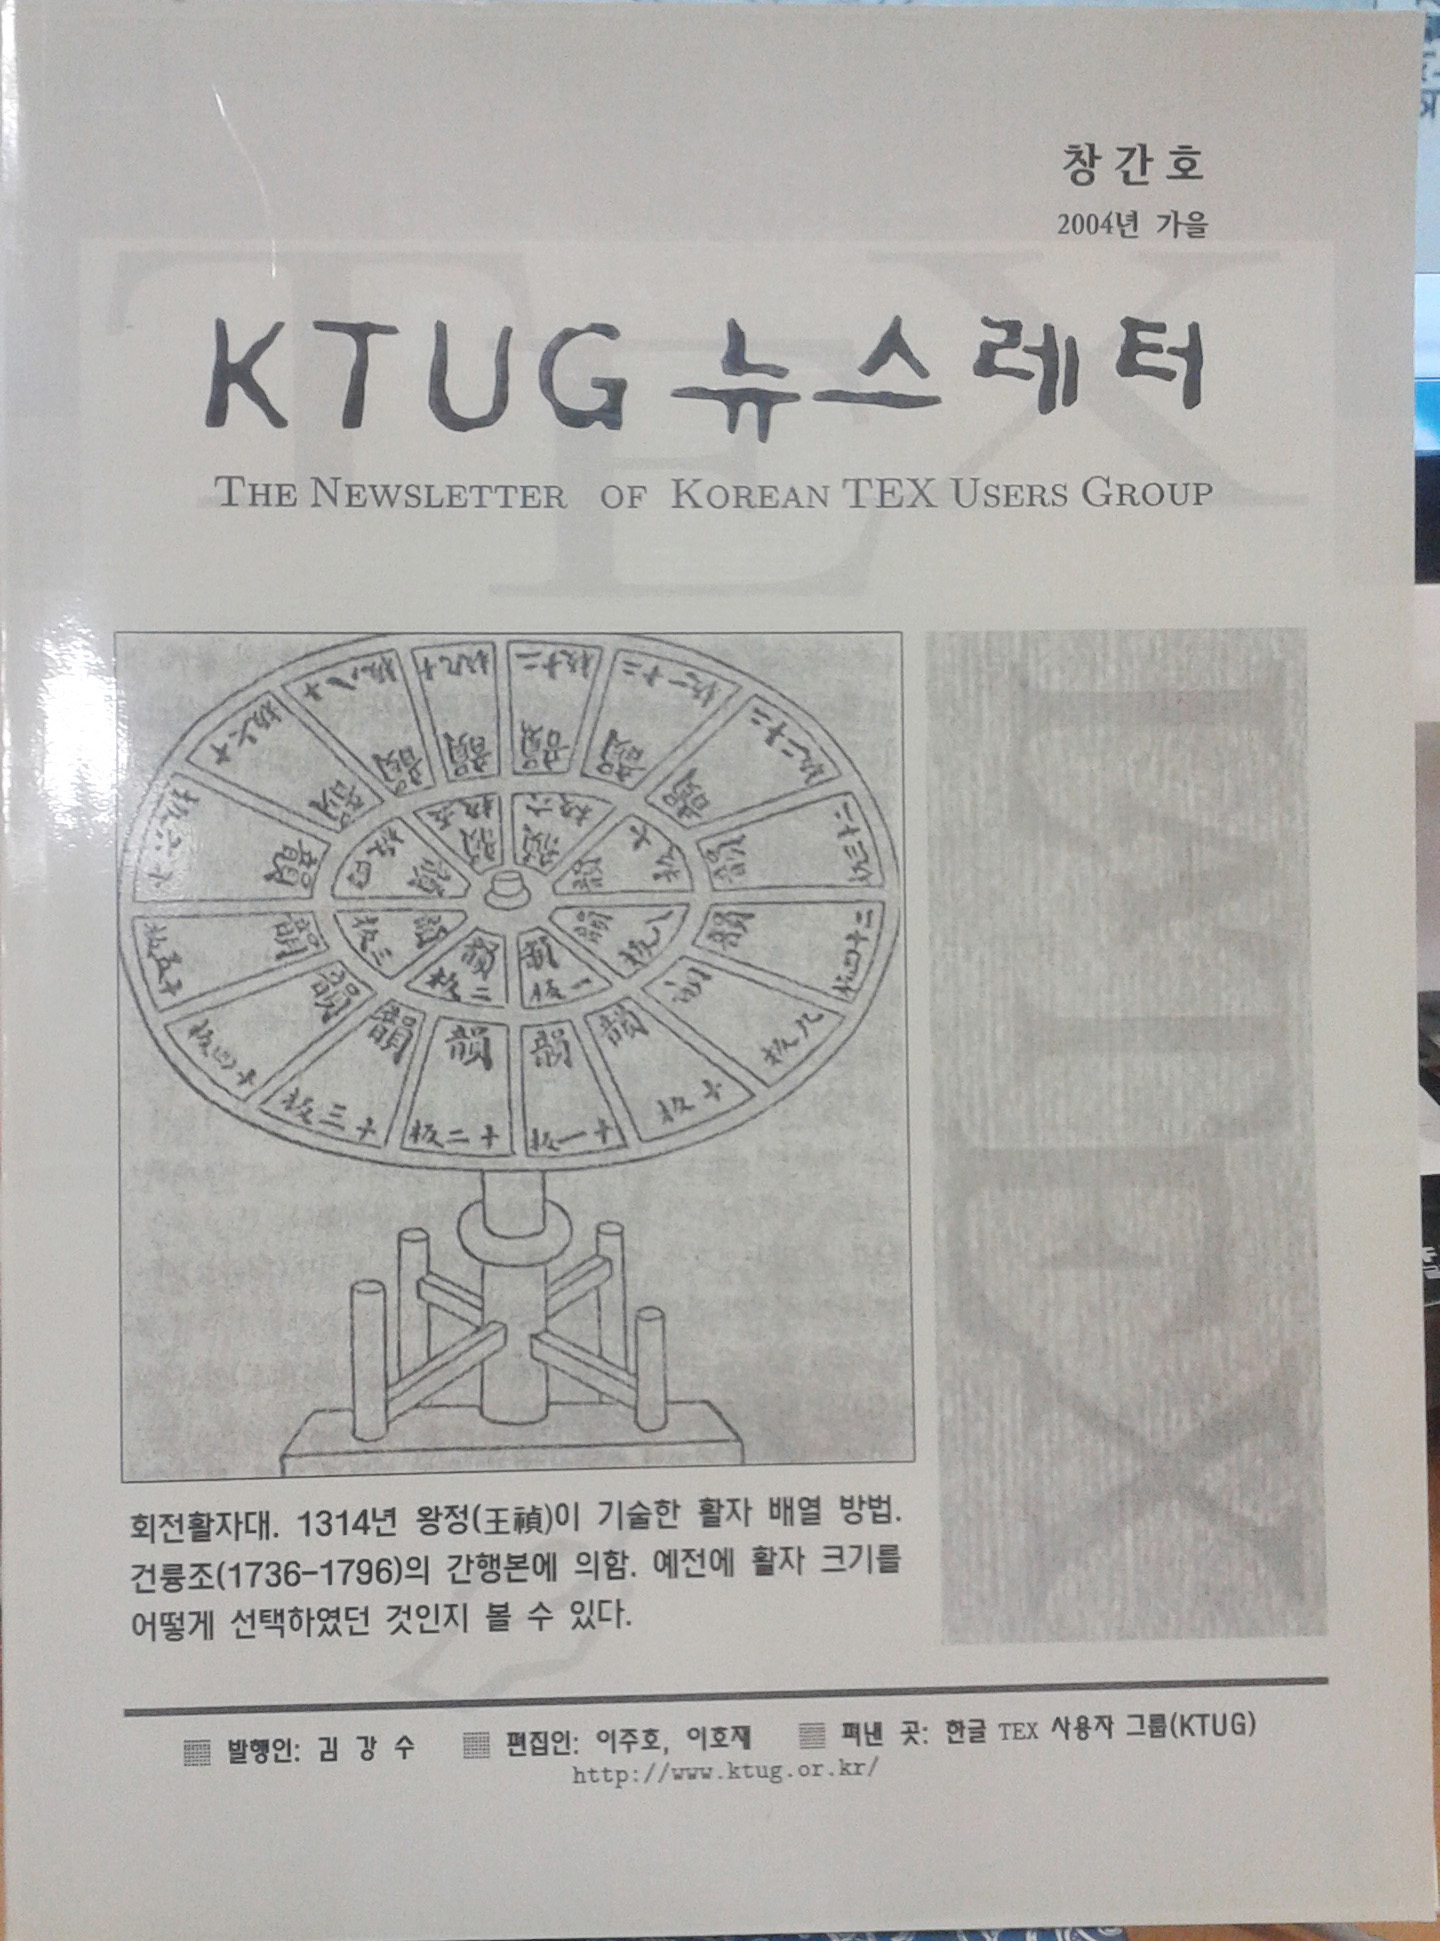 KTUG_Newsletter1.jpg